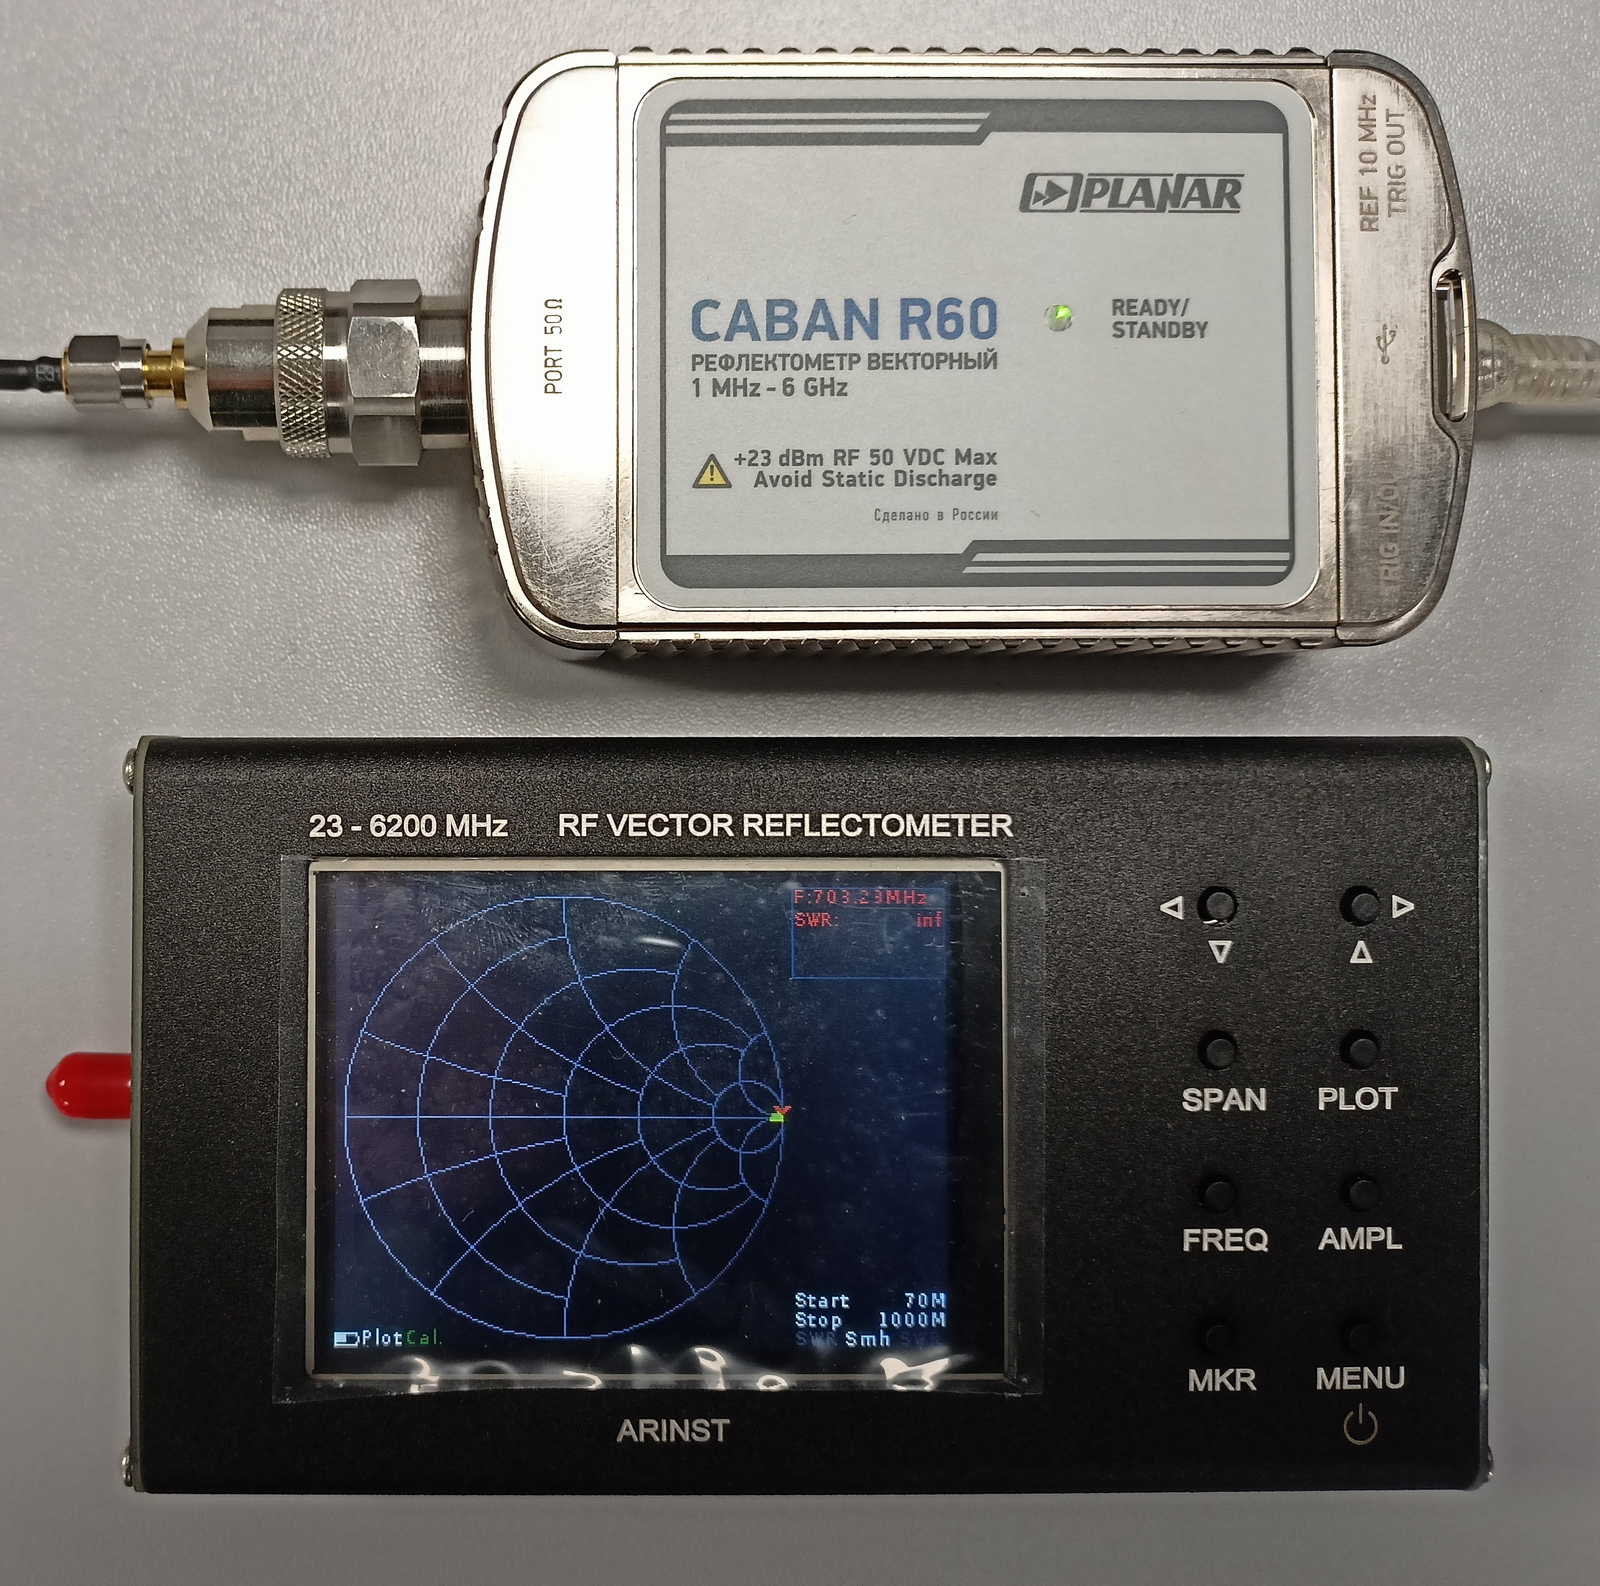 Рис.8 Внешний вид рефлектометров CABAN R60 (сверху) и ARINST VR 23-6200 (снизу)